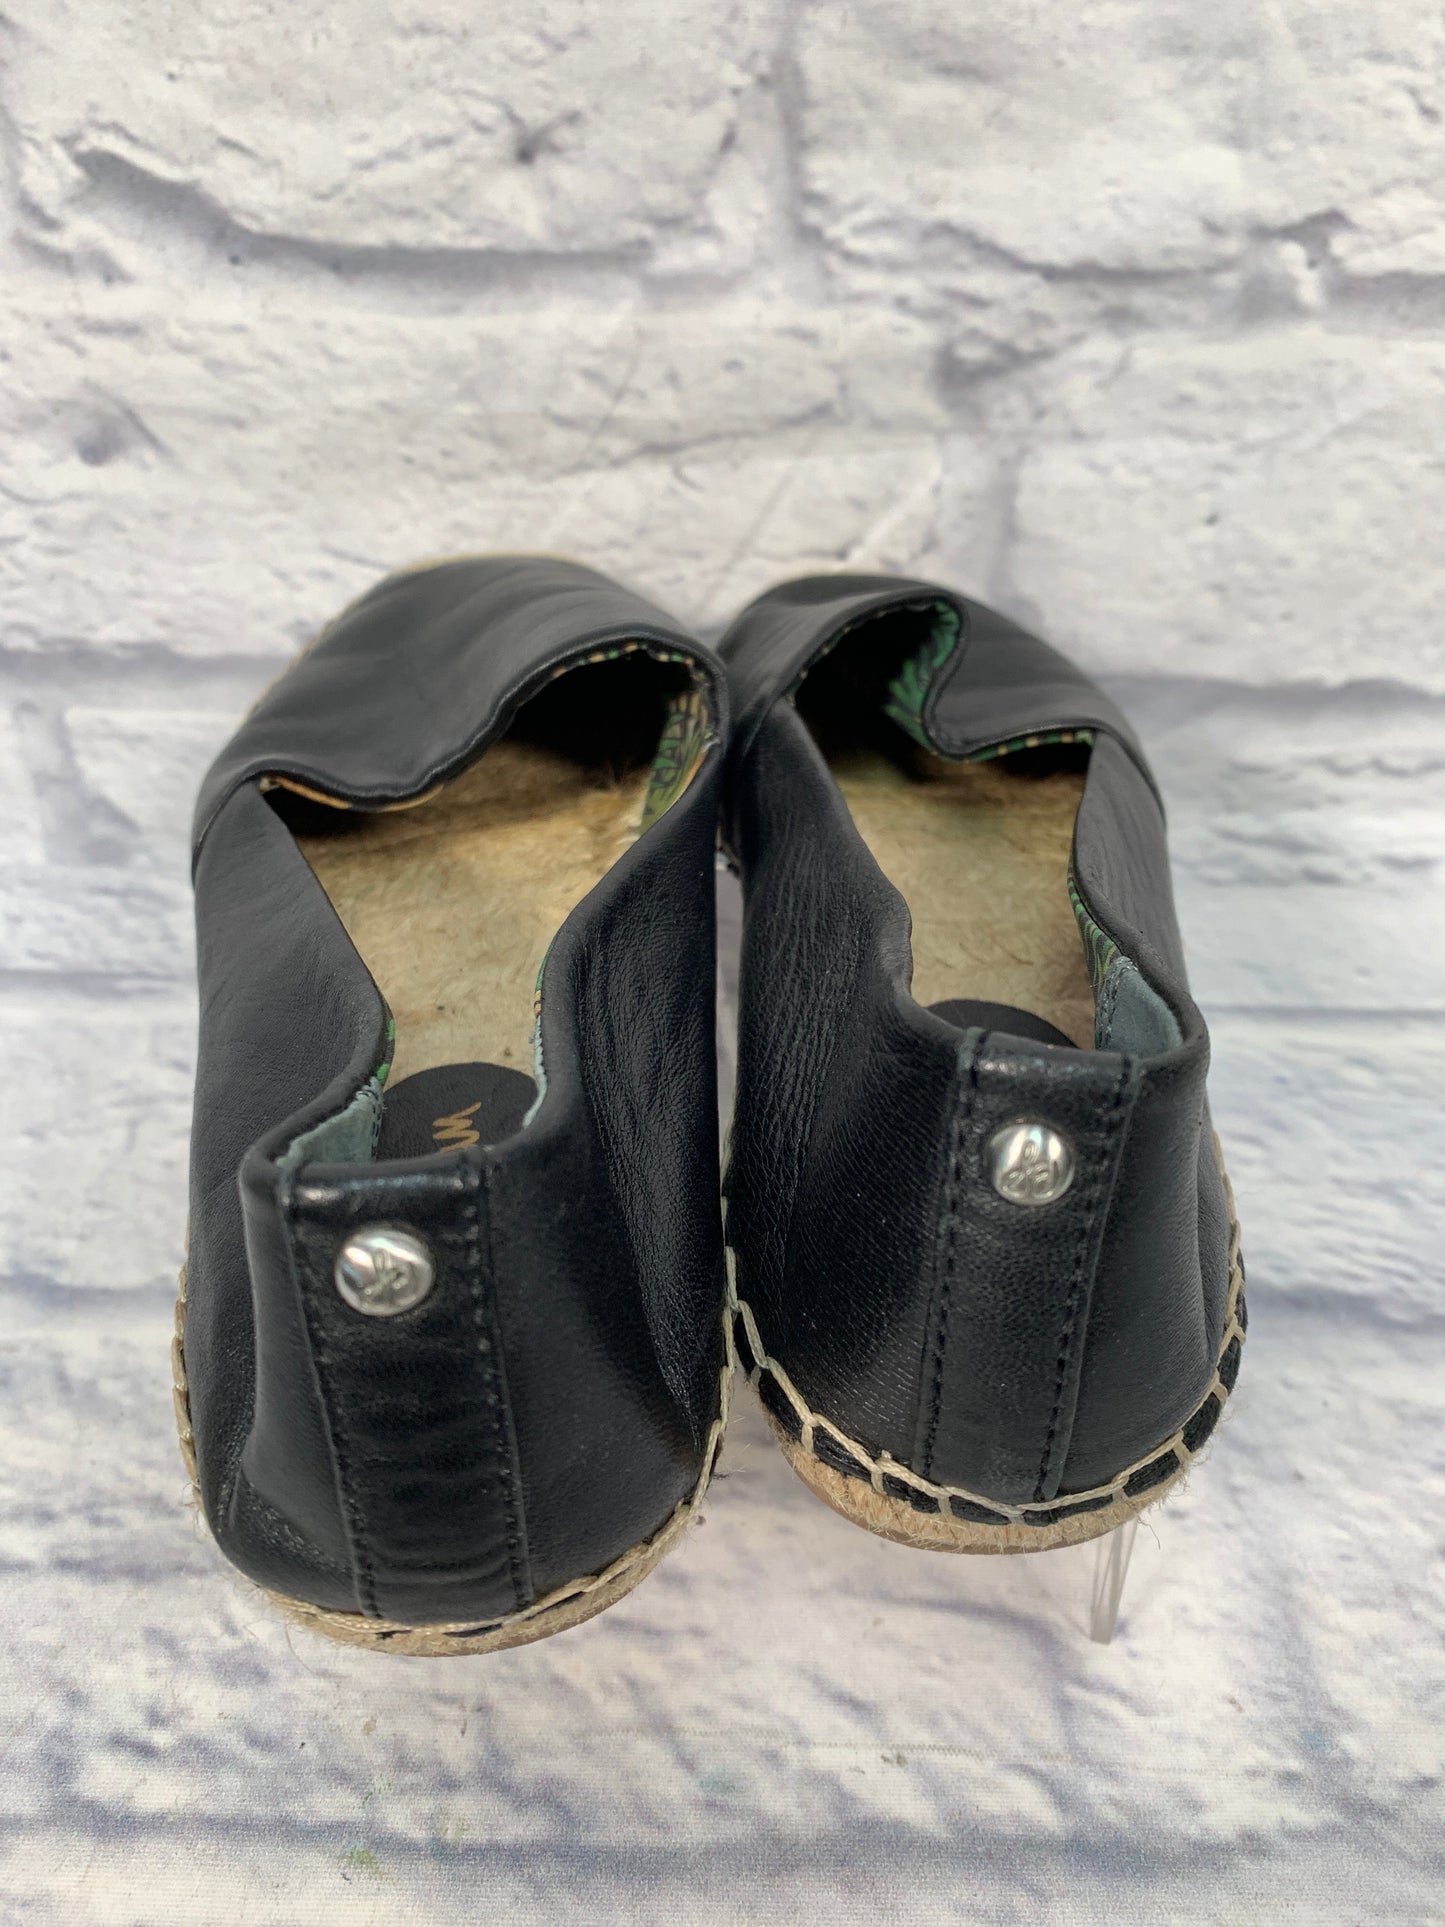 Black & Tan Shoes Flats Sam Edelman, Size 8.5